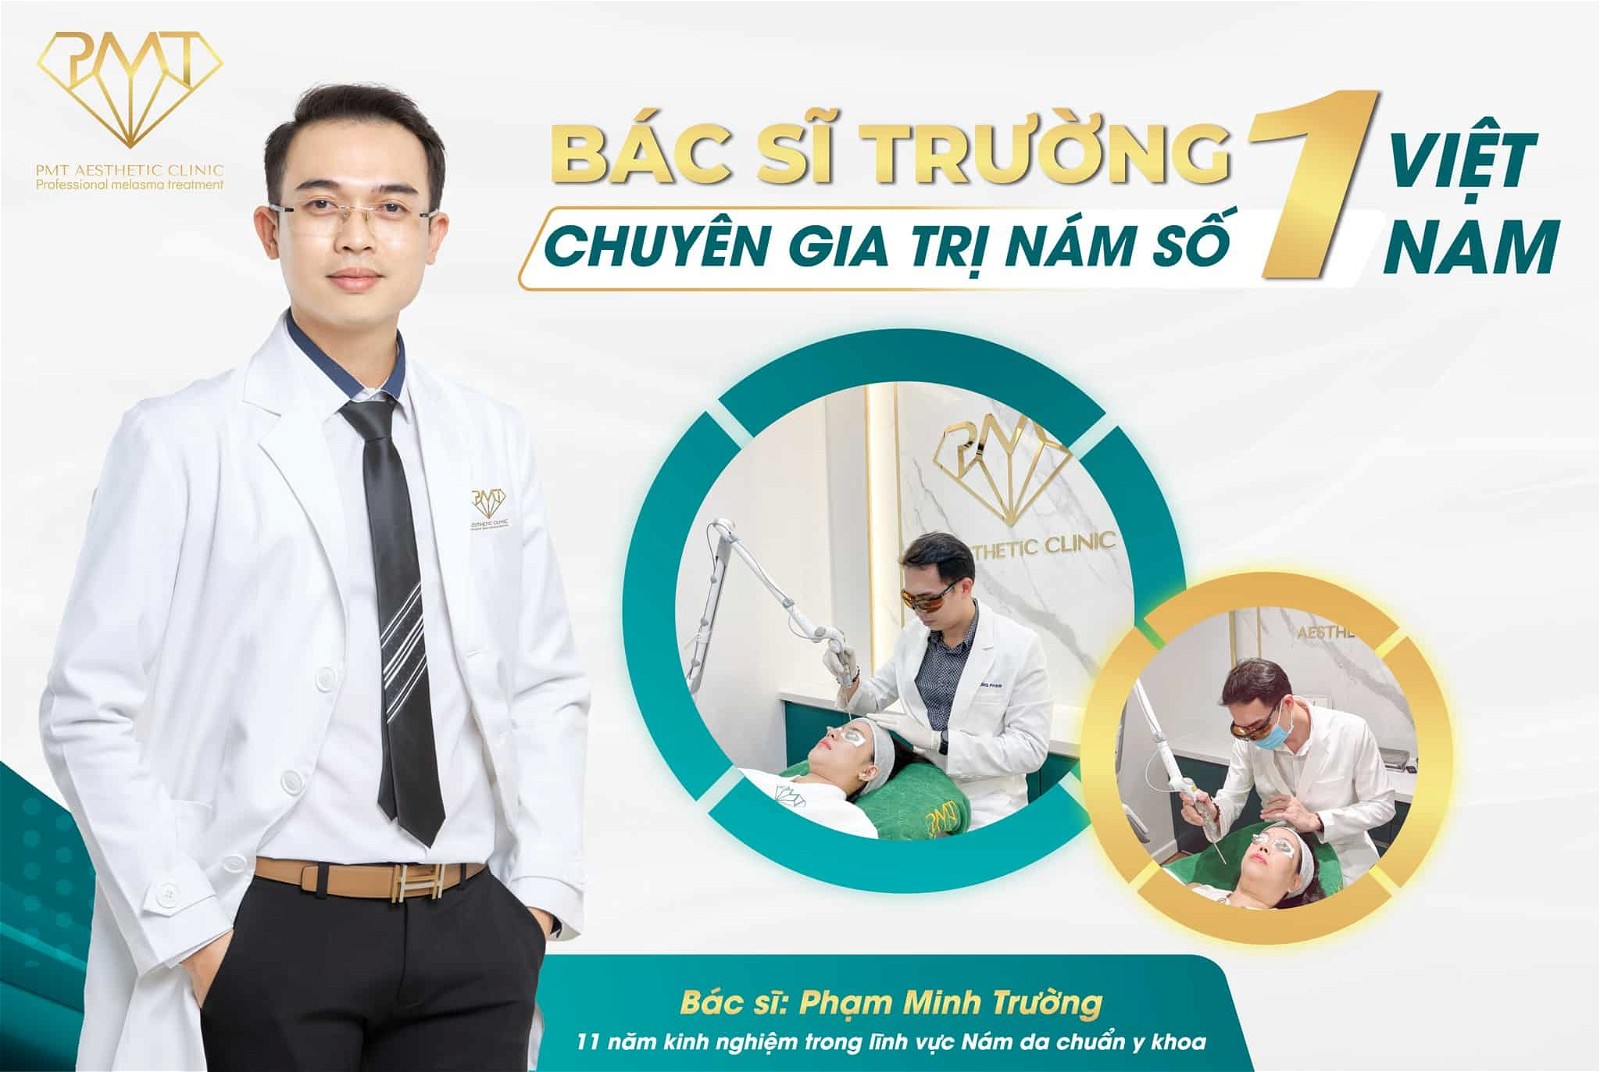 BS.CK1 Phạm Minh Trường hiện là Founder & CEO của PMT Aesthetic Clinic.